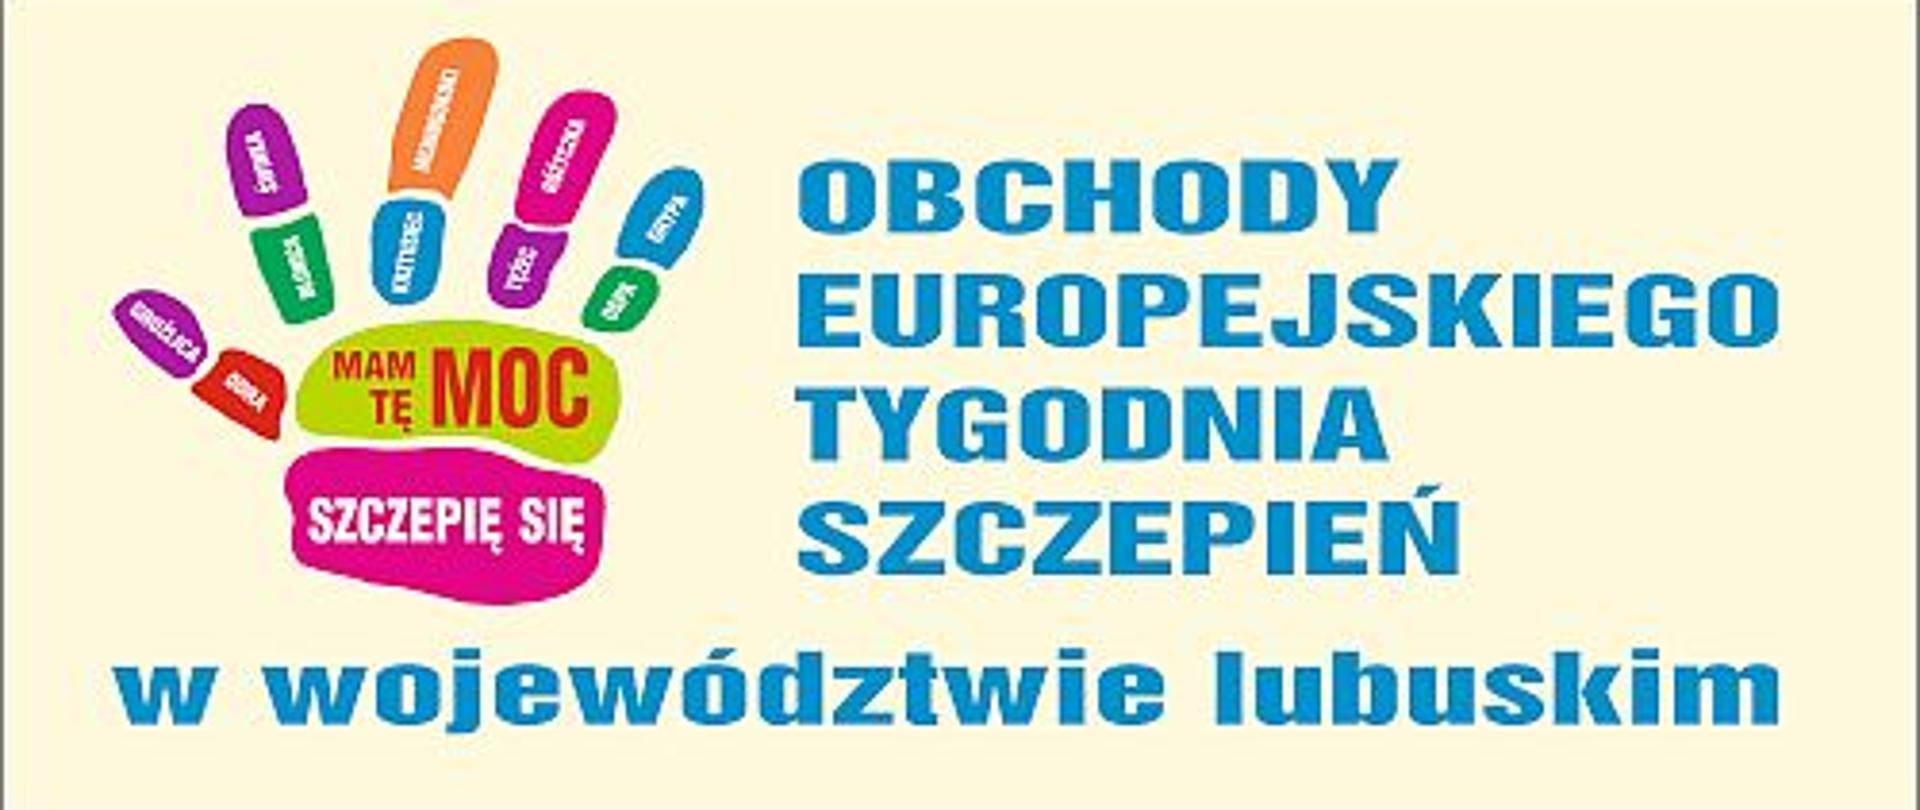 Baner informujący o obchodach Europejskiego Tygodnia Szczepień w województwie lubuskim